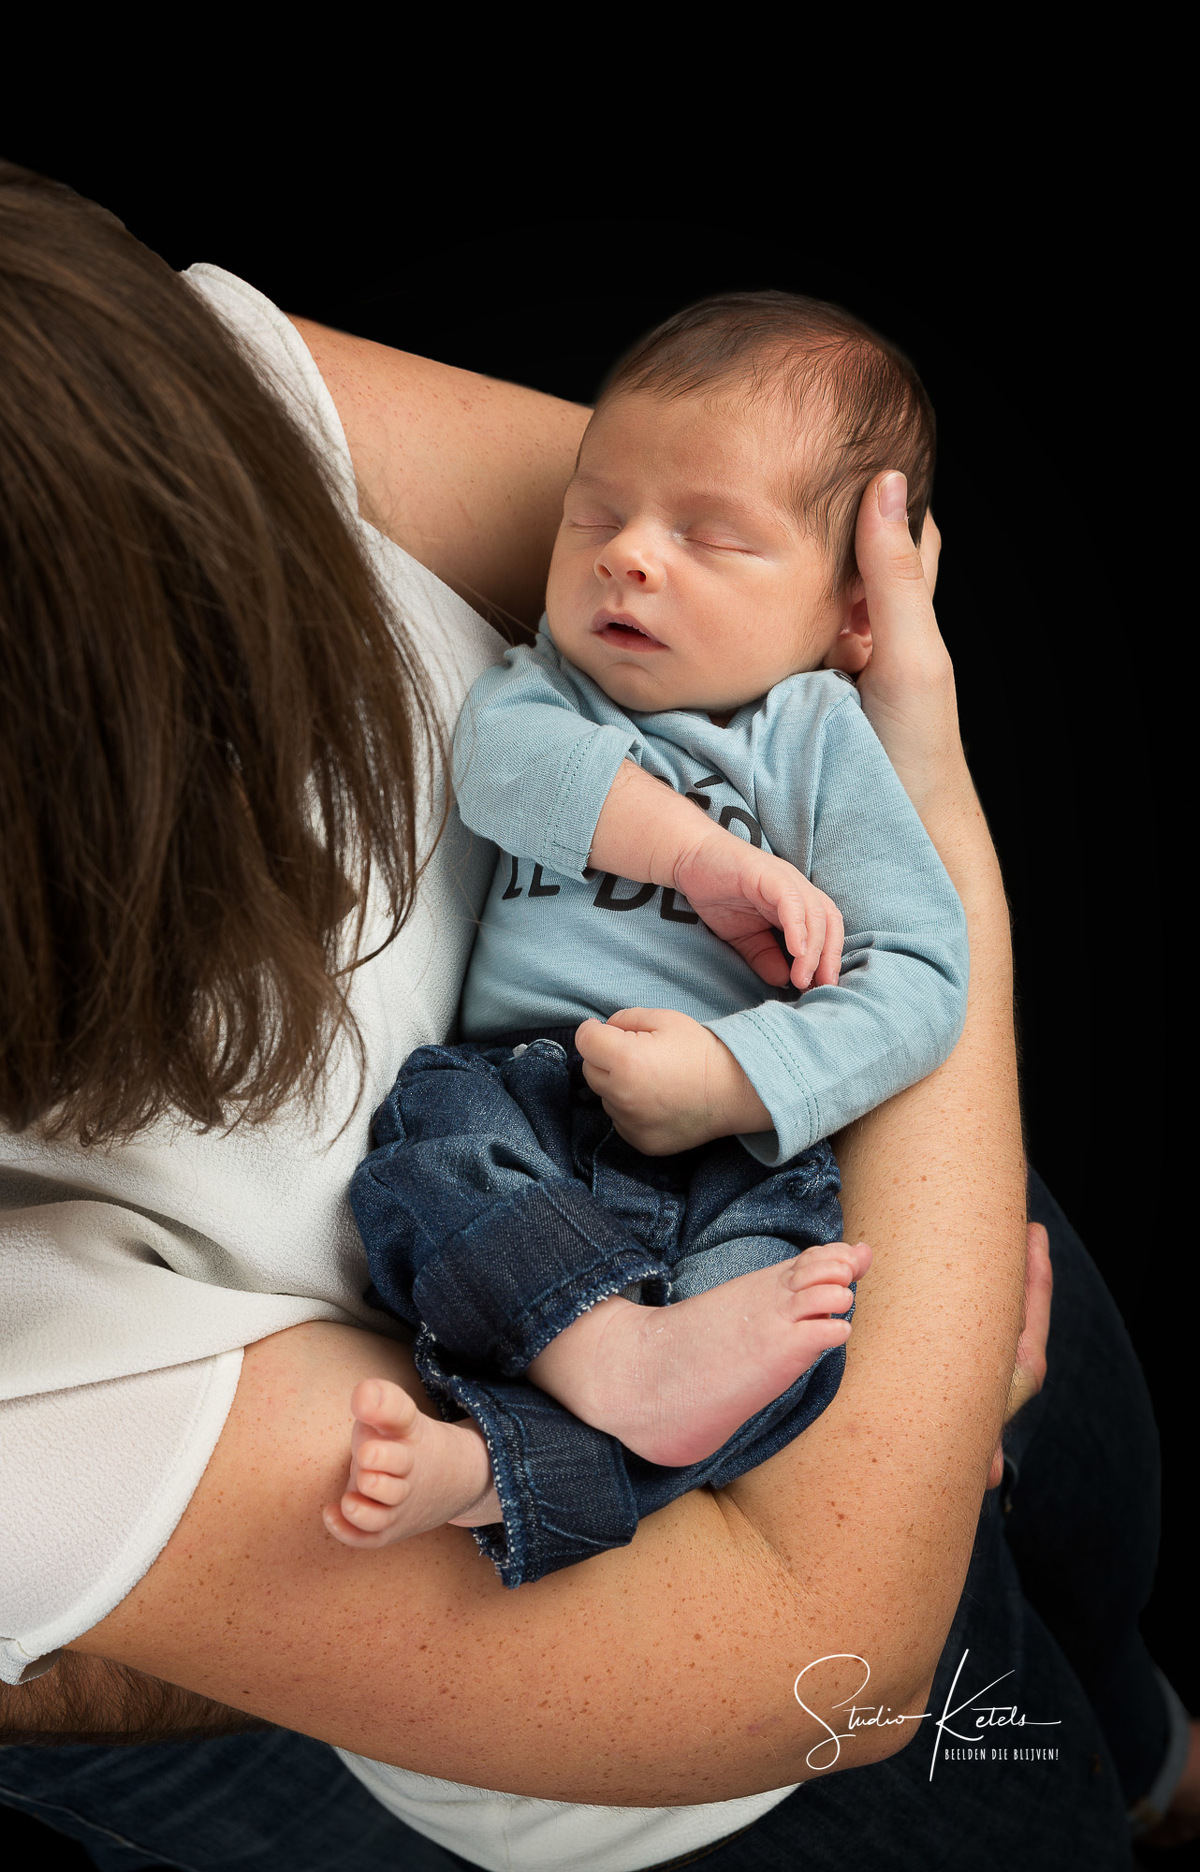 Portret van een pasgeboren babytje in de armen van de mama. Portret door Studio Ketels